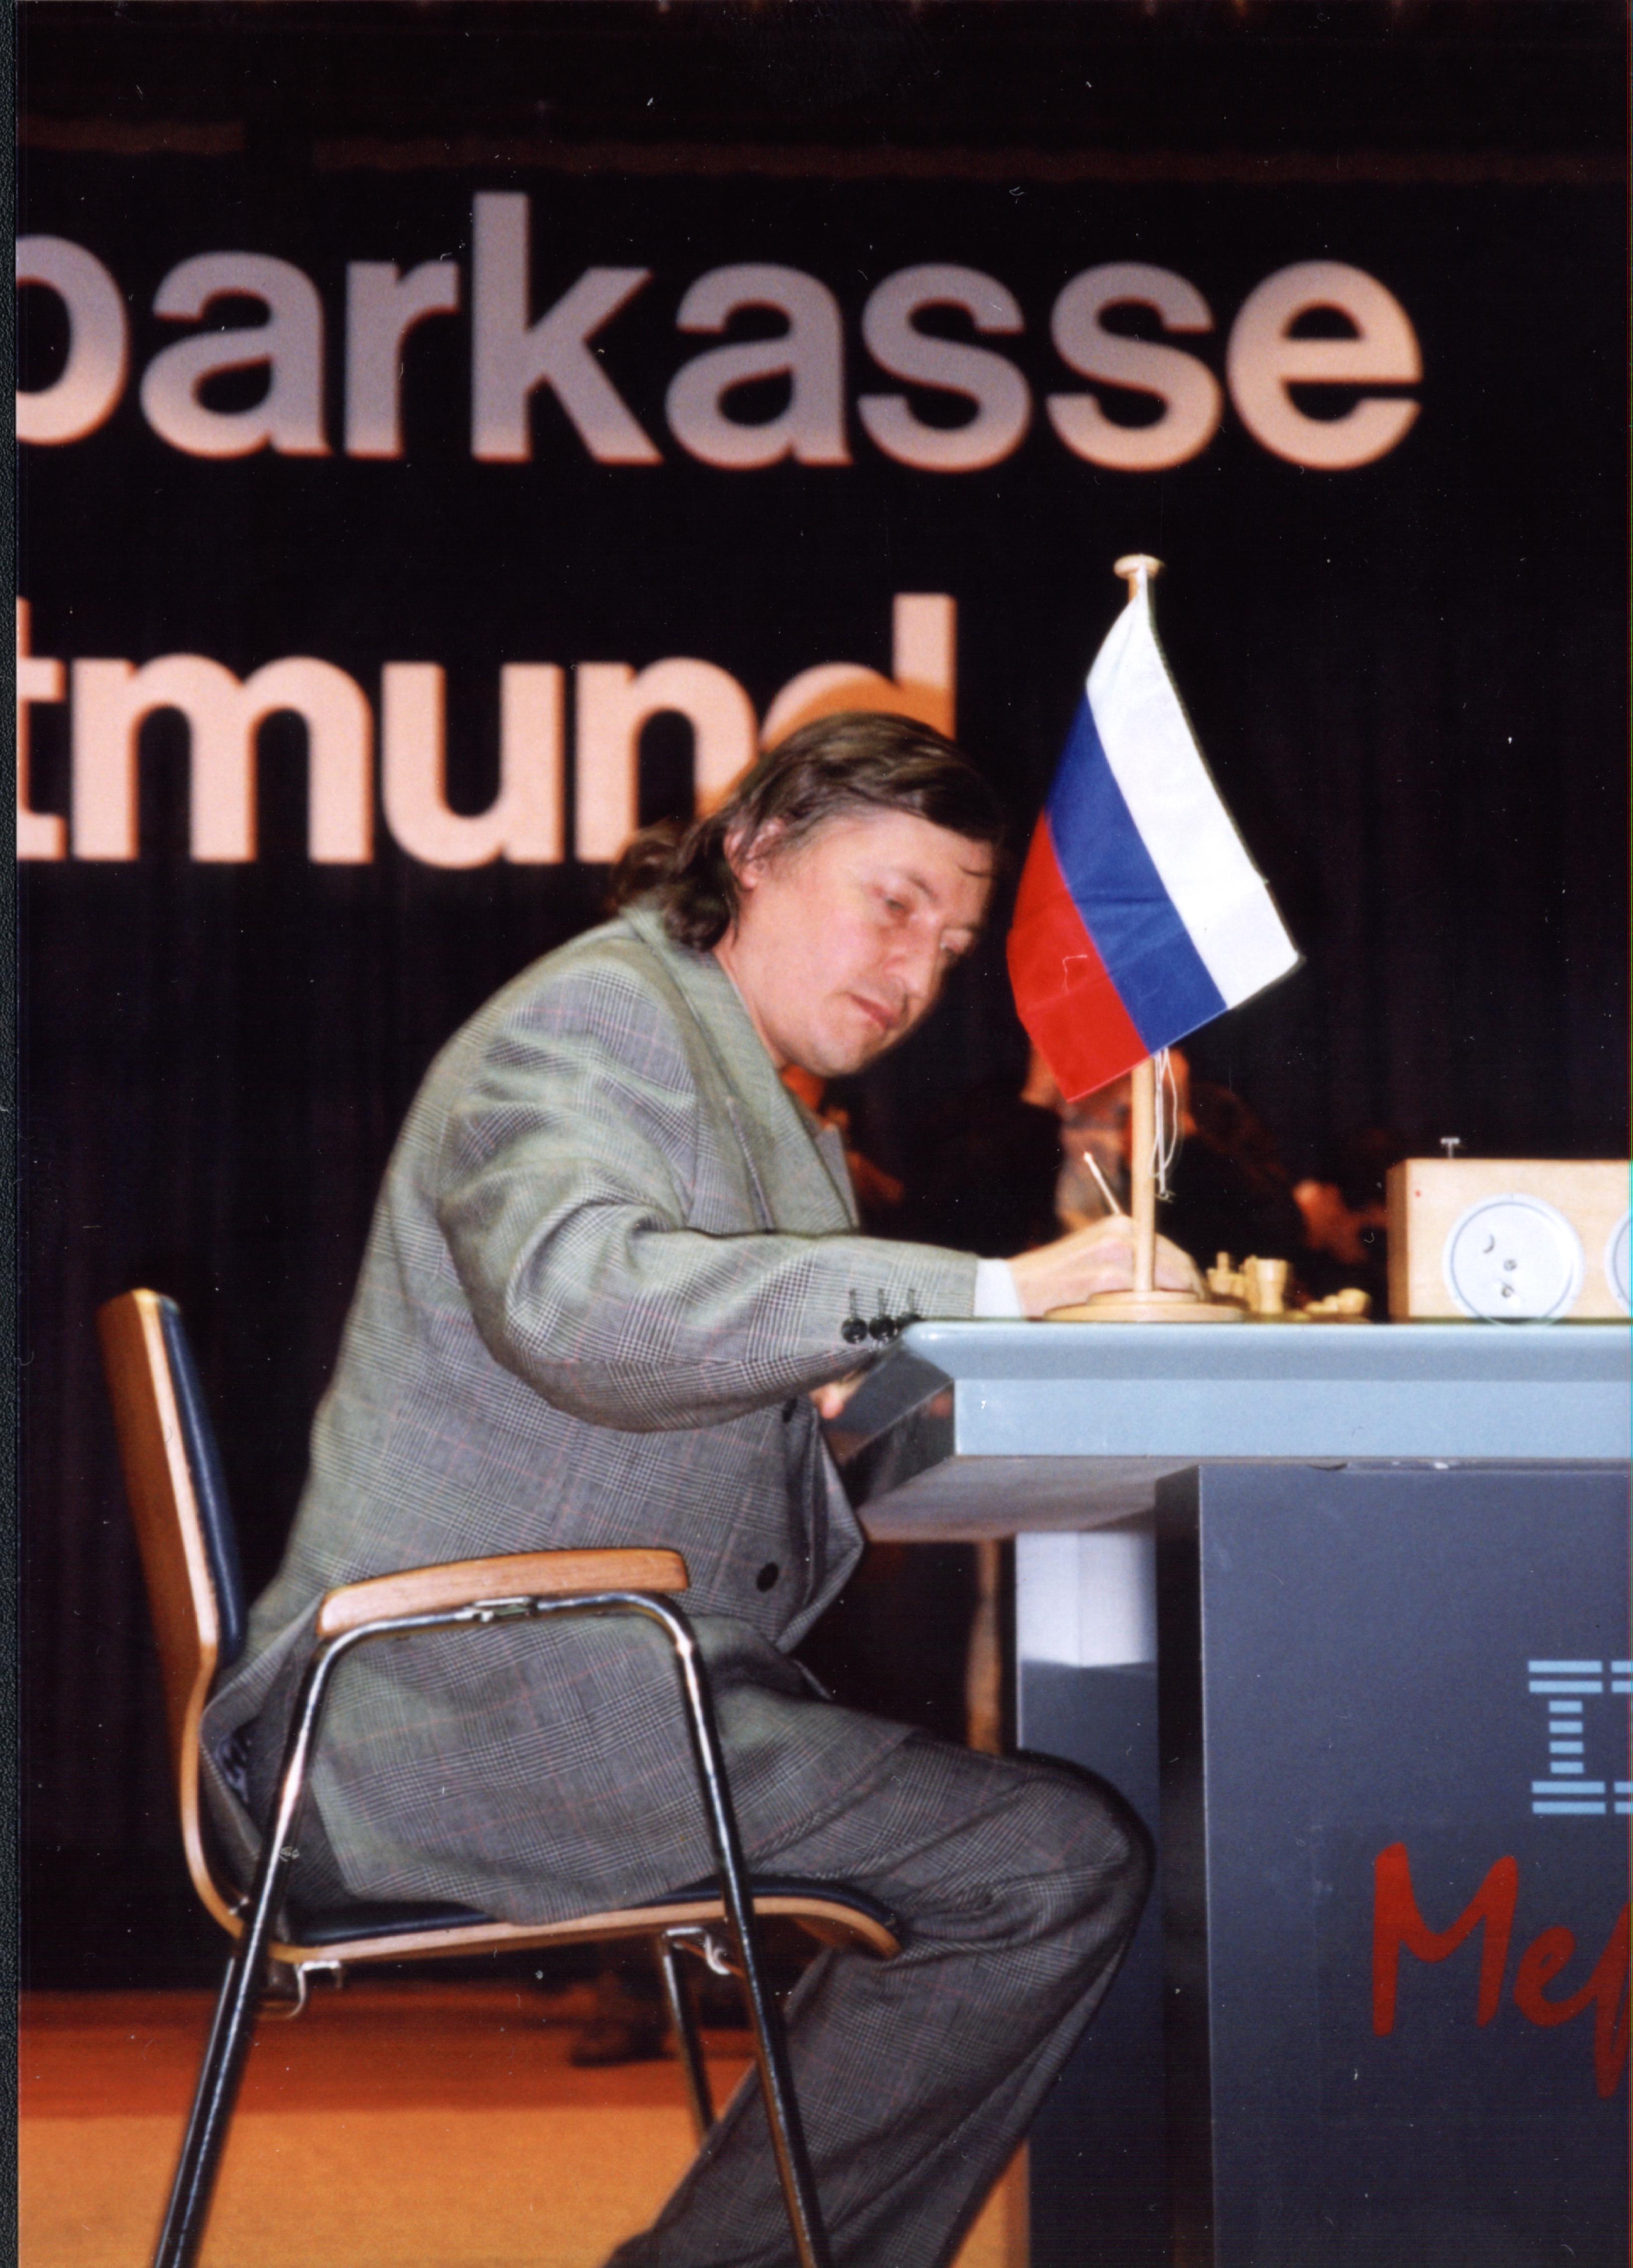 FIDE World Chess Championship 1998 - Wikipedia